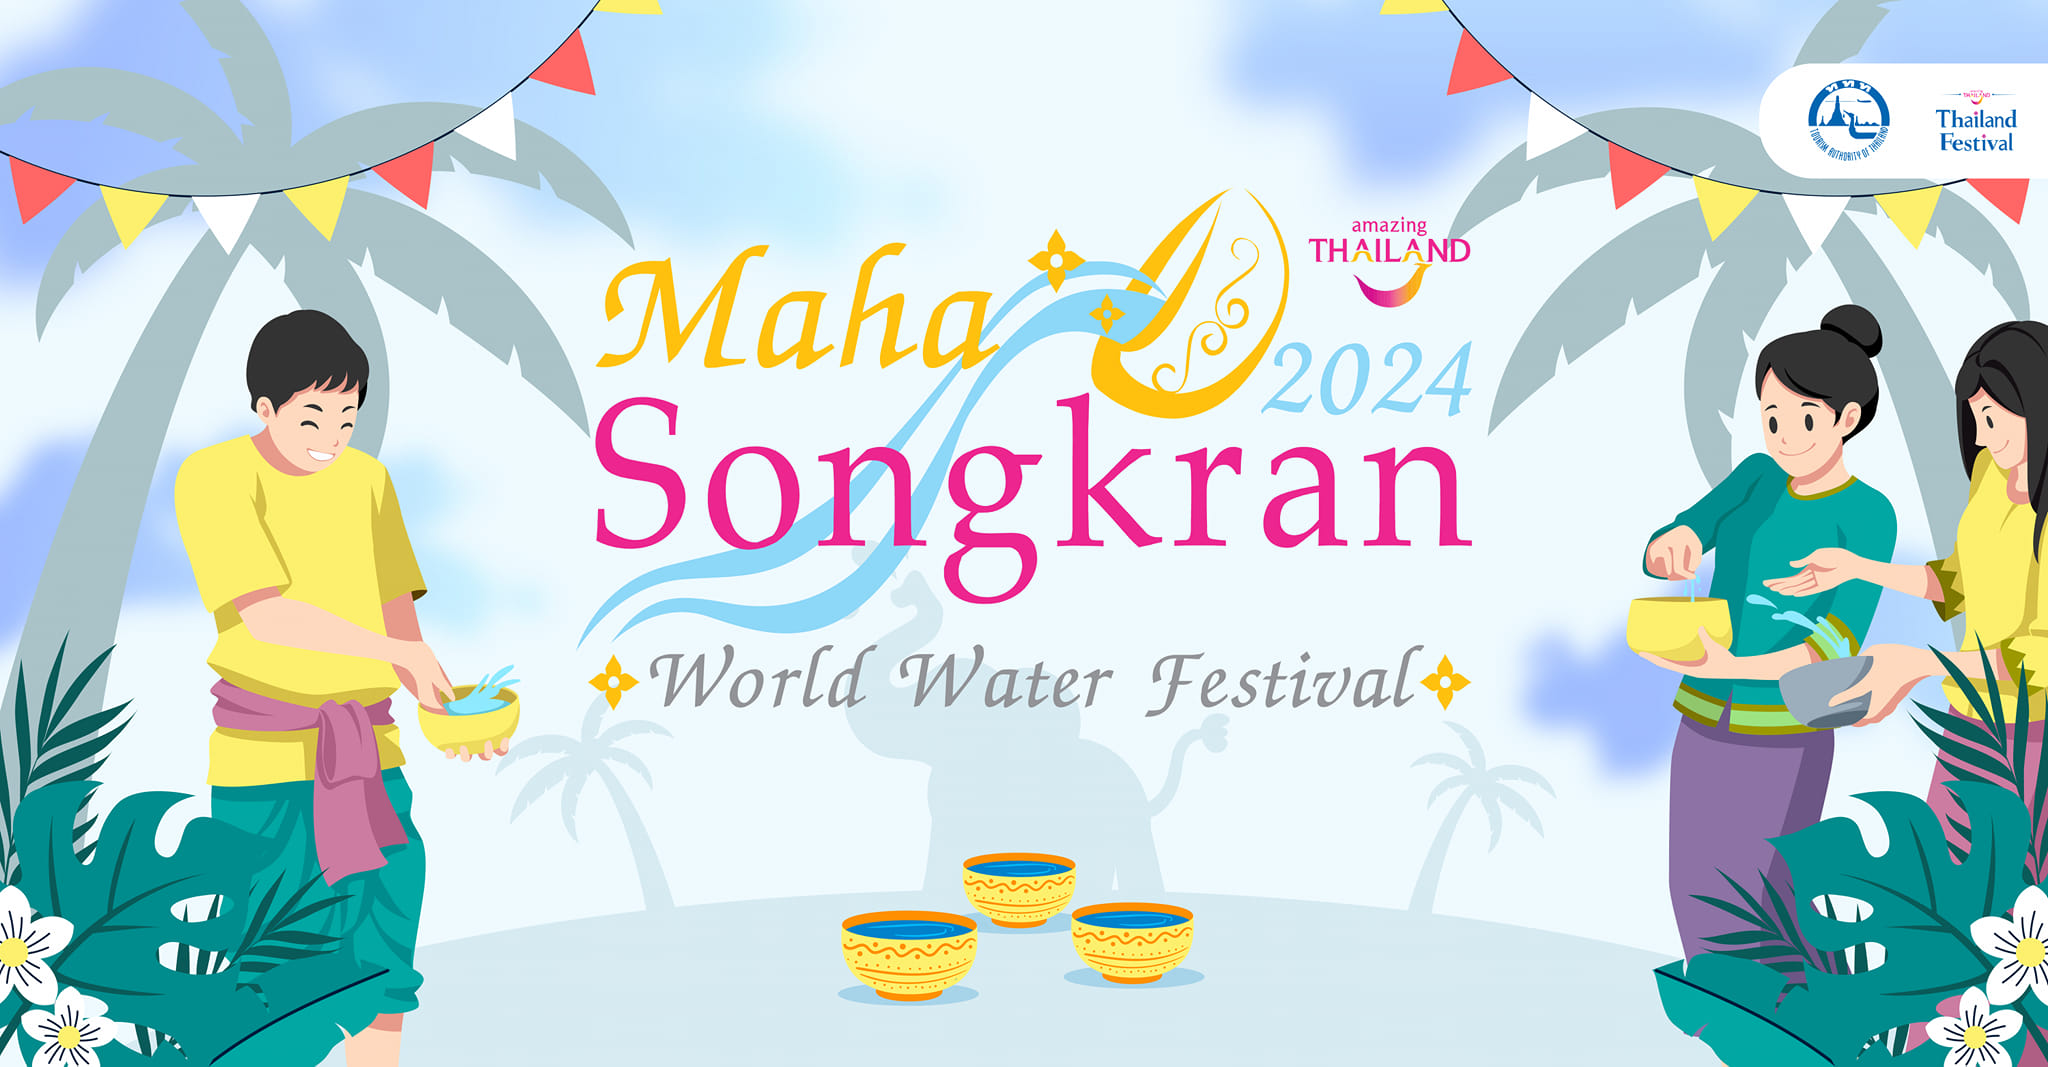 Programme du Festival de Songkran 2024 à Bangkok